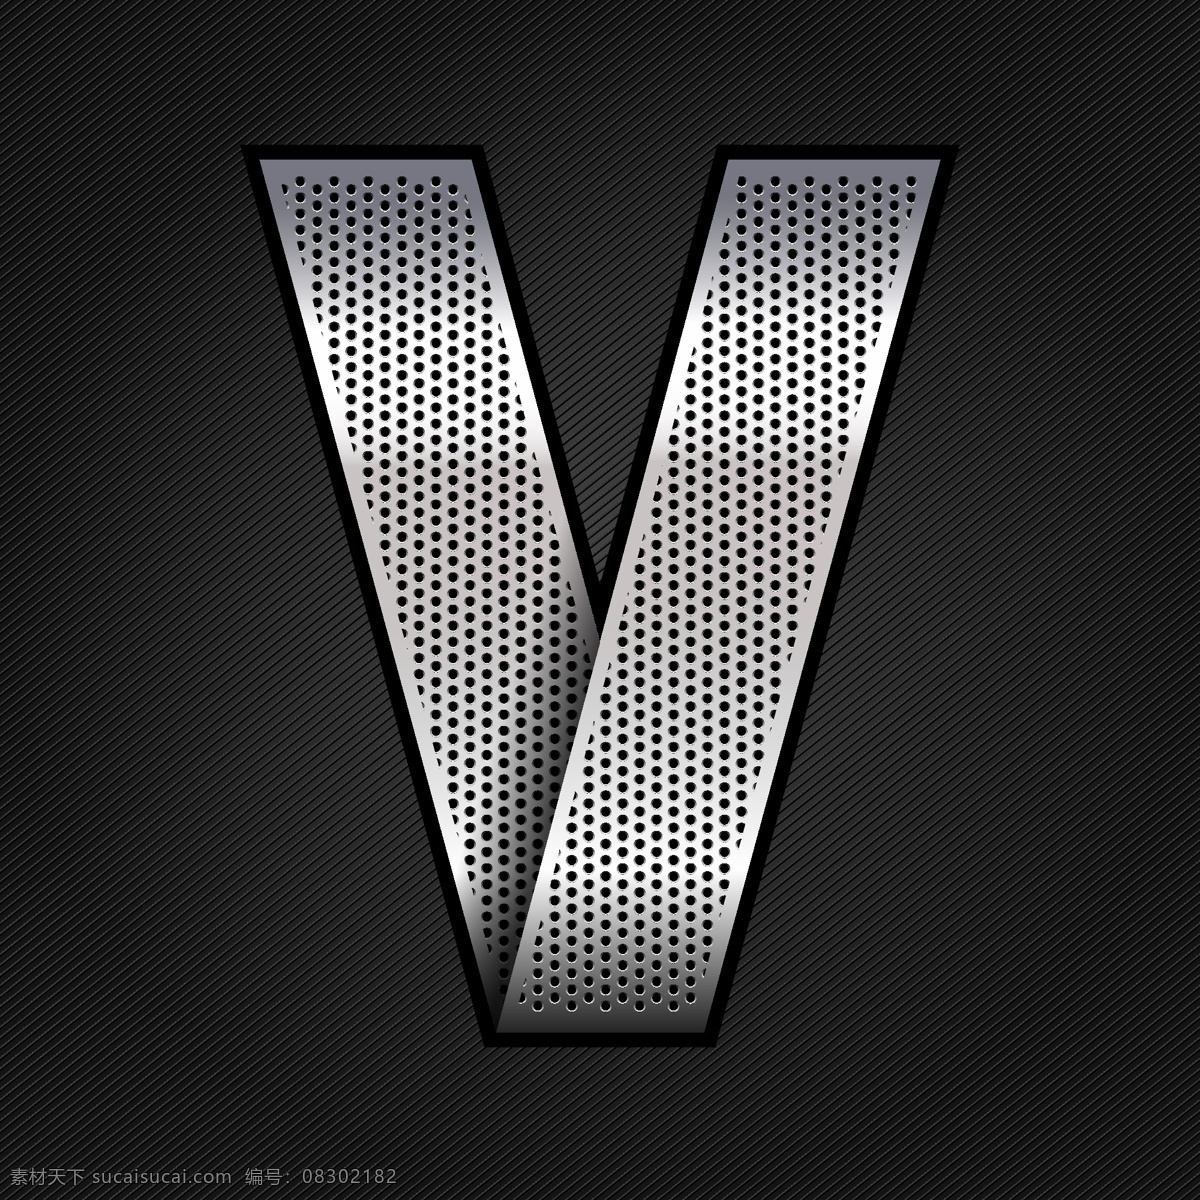 金属字母v 金属字母 v 素材设计 立体 灰色 书画文字 文化艺术 矢量素材 黑色